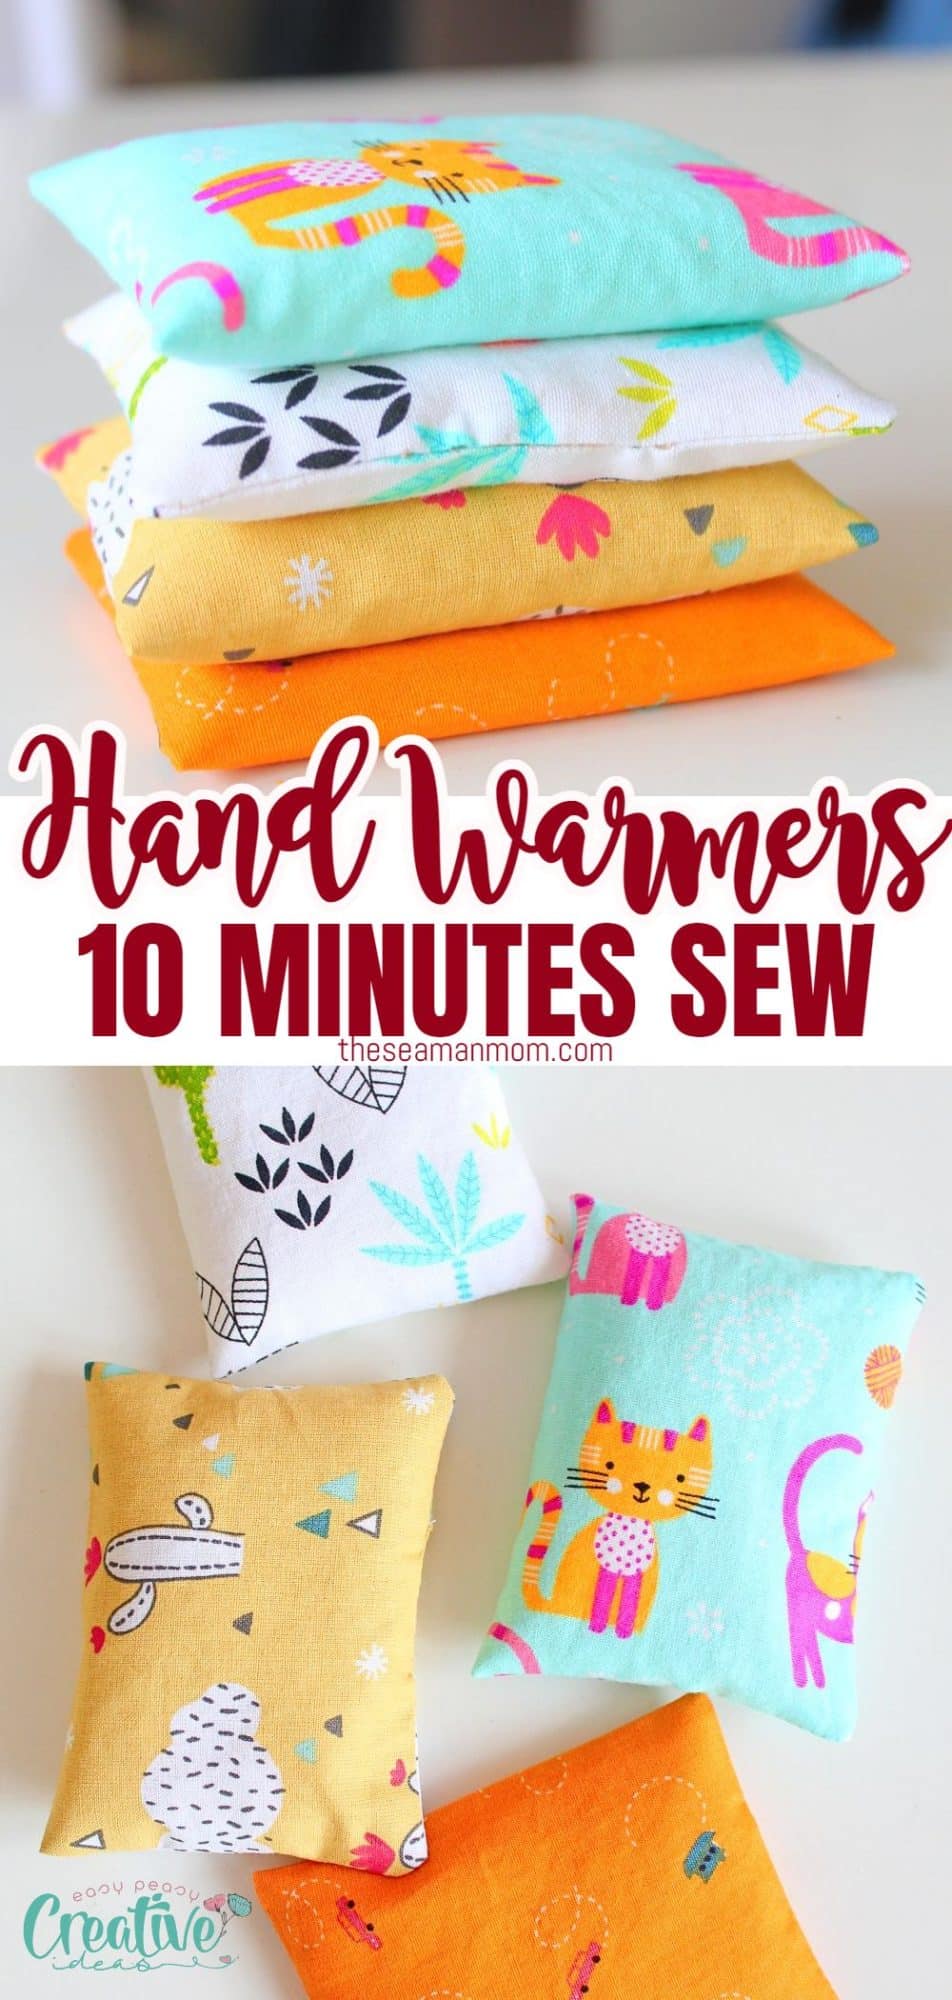 DIY hand warmers sewing tutorial